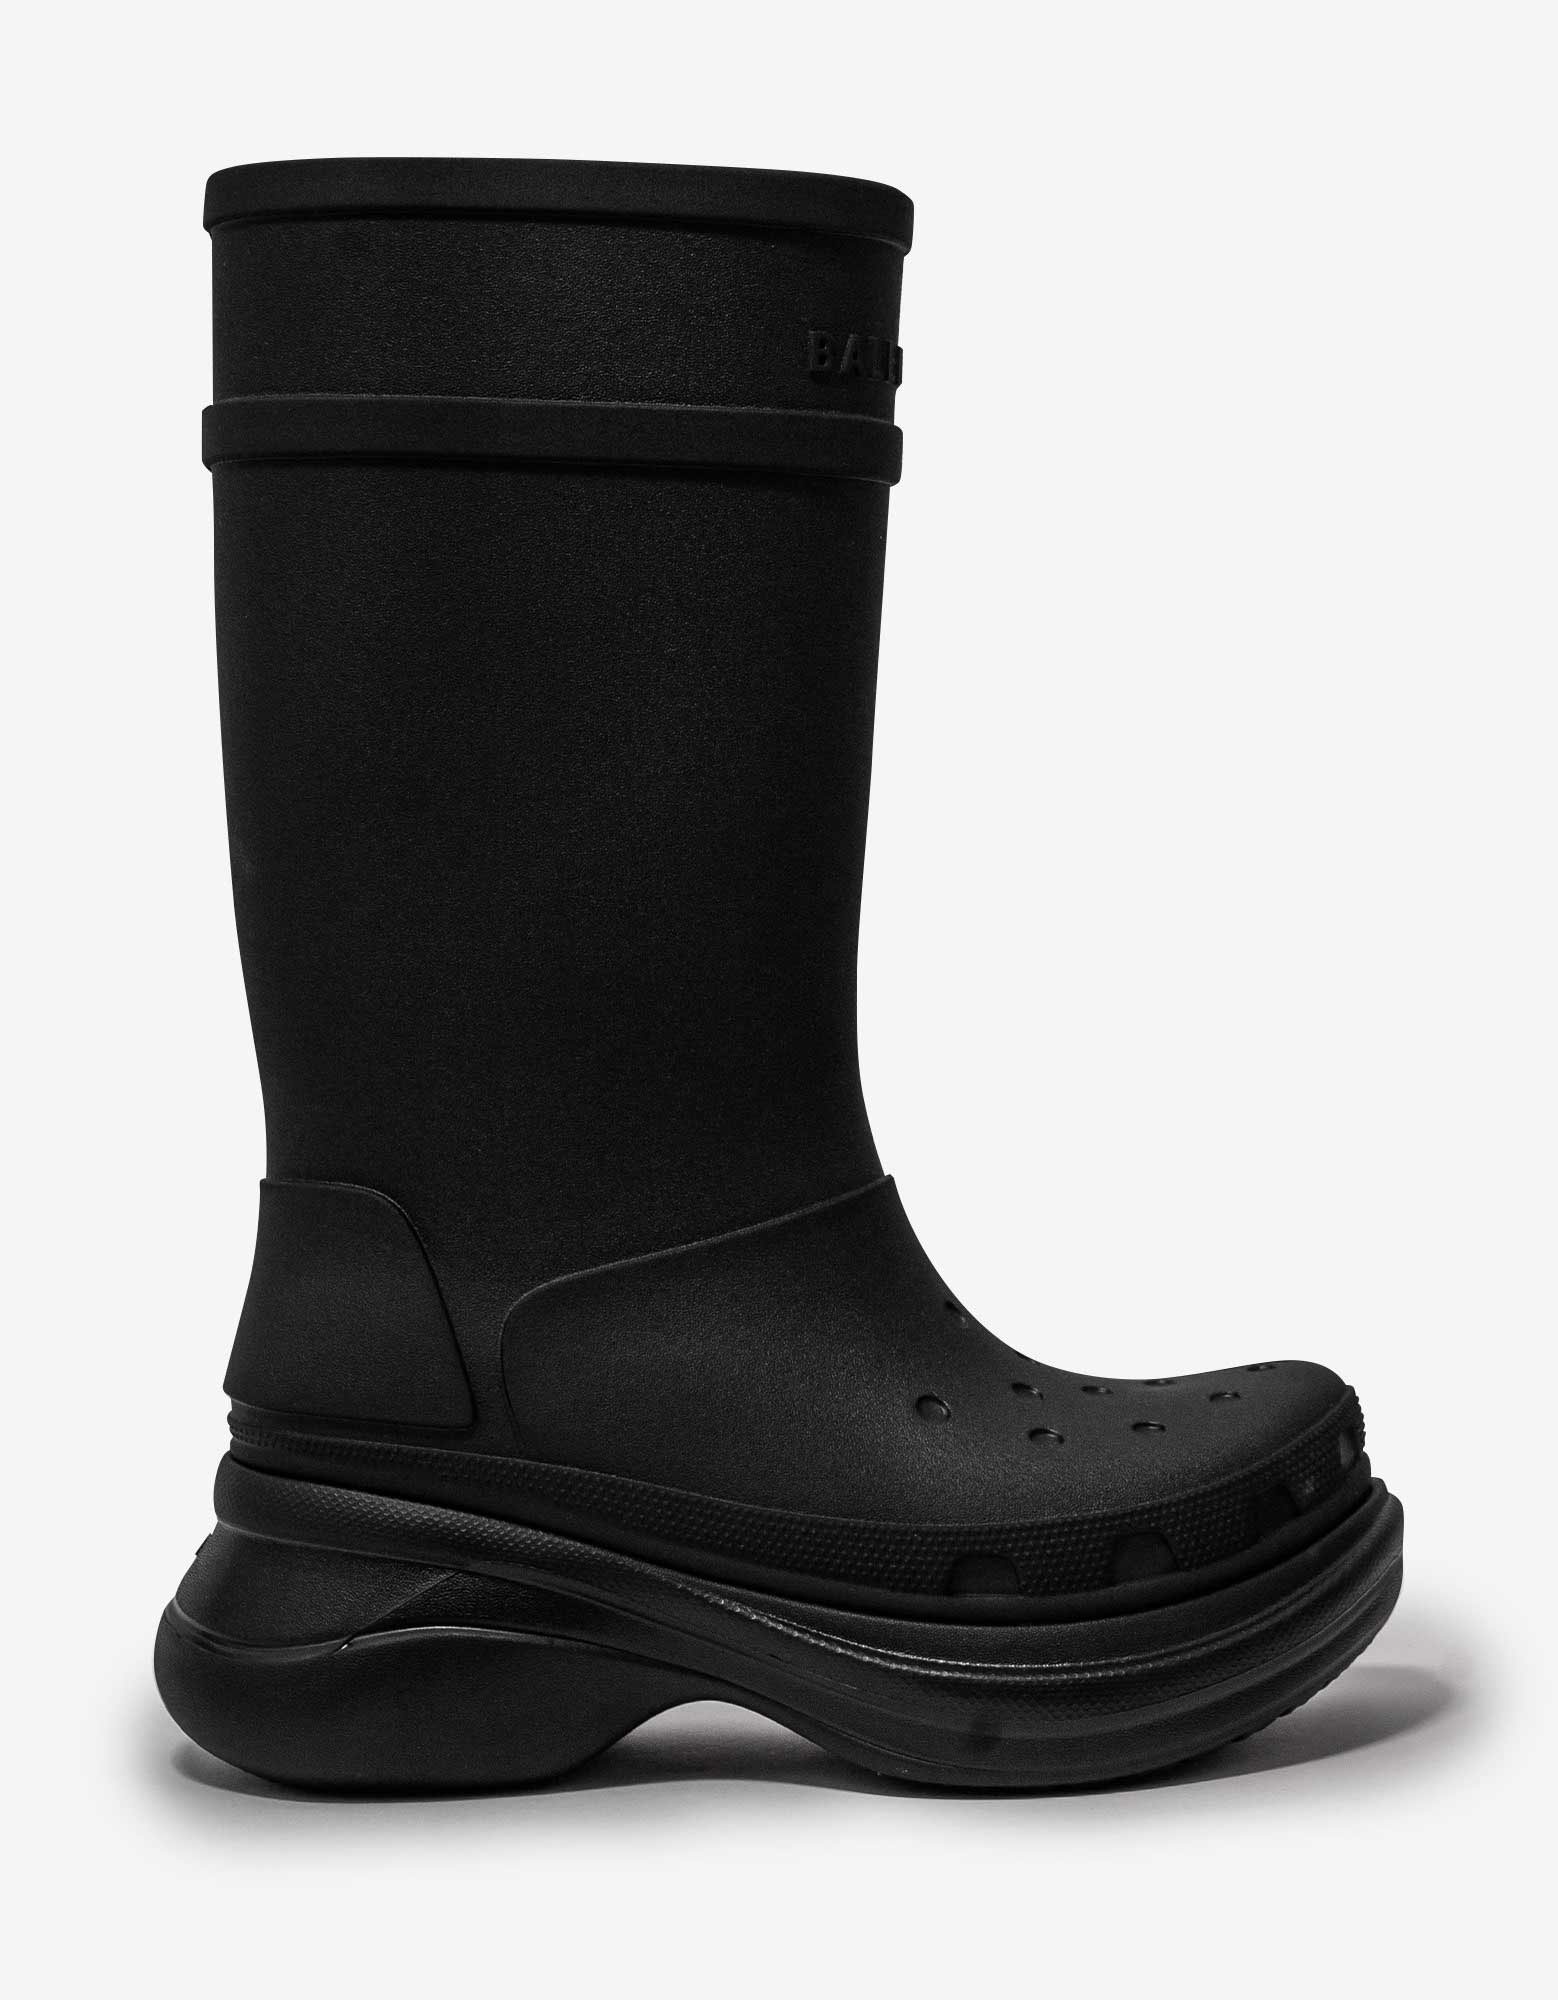 Black Crocs Boots - 2